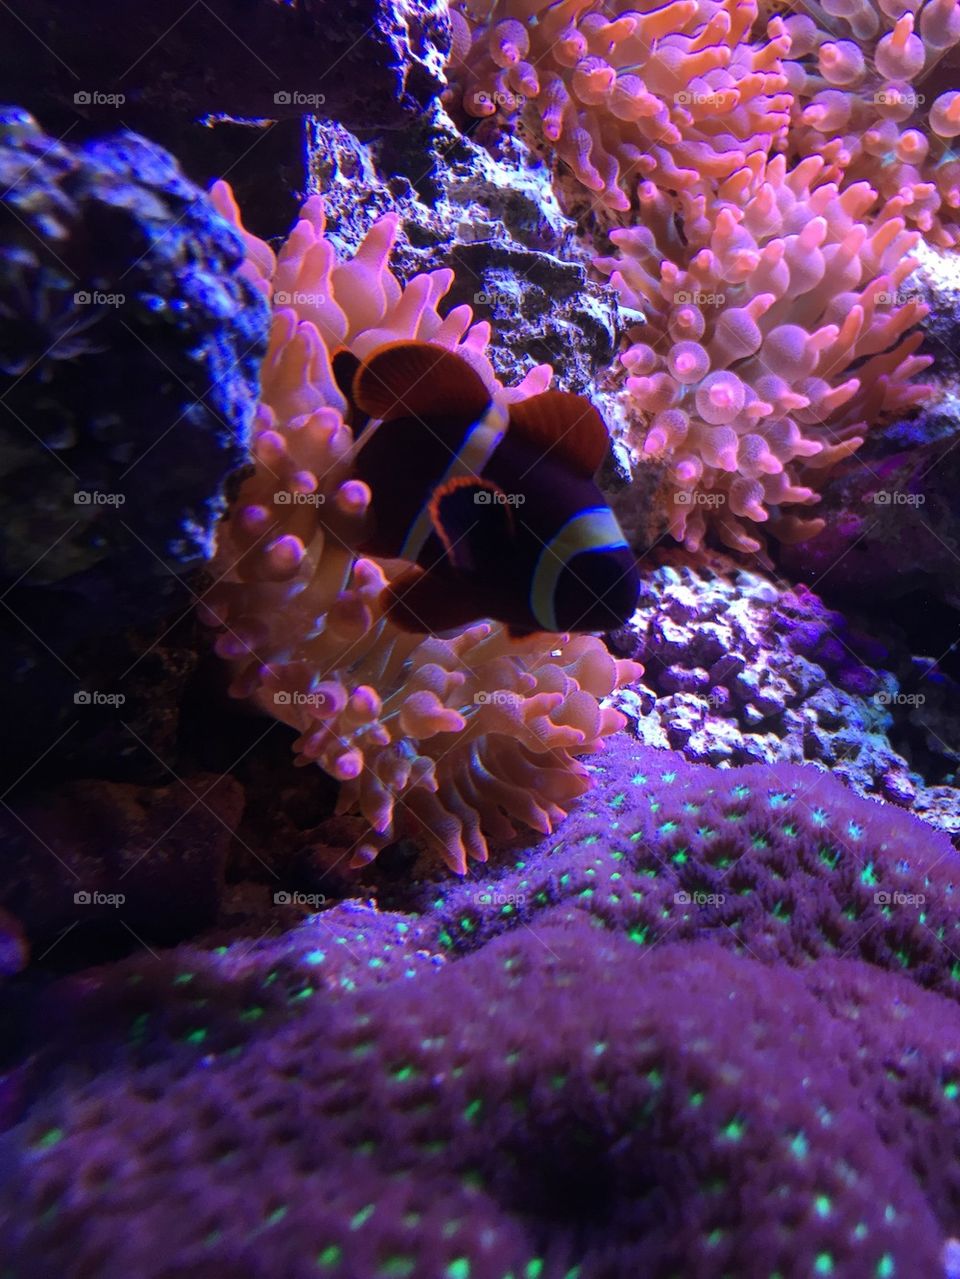 Clownfish snuggle